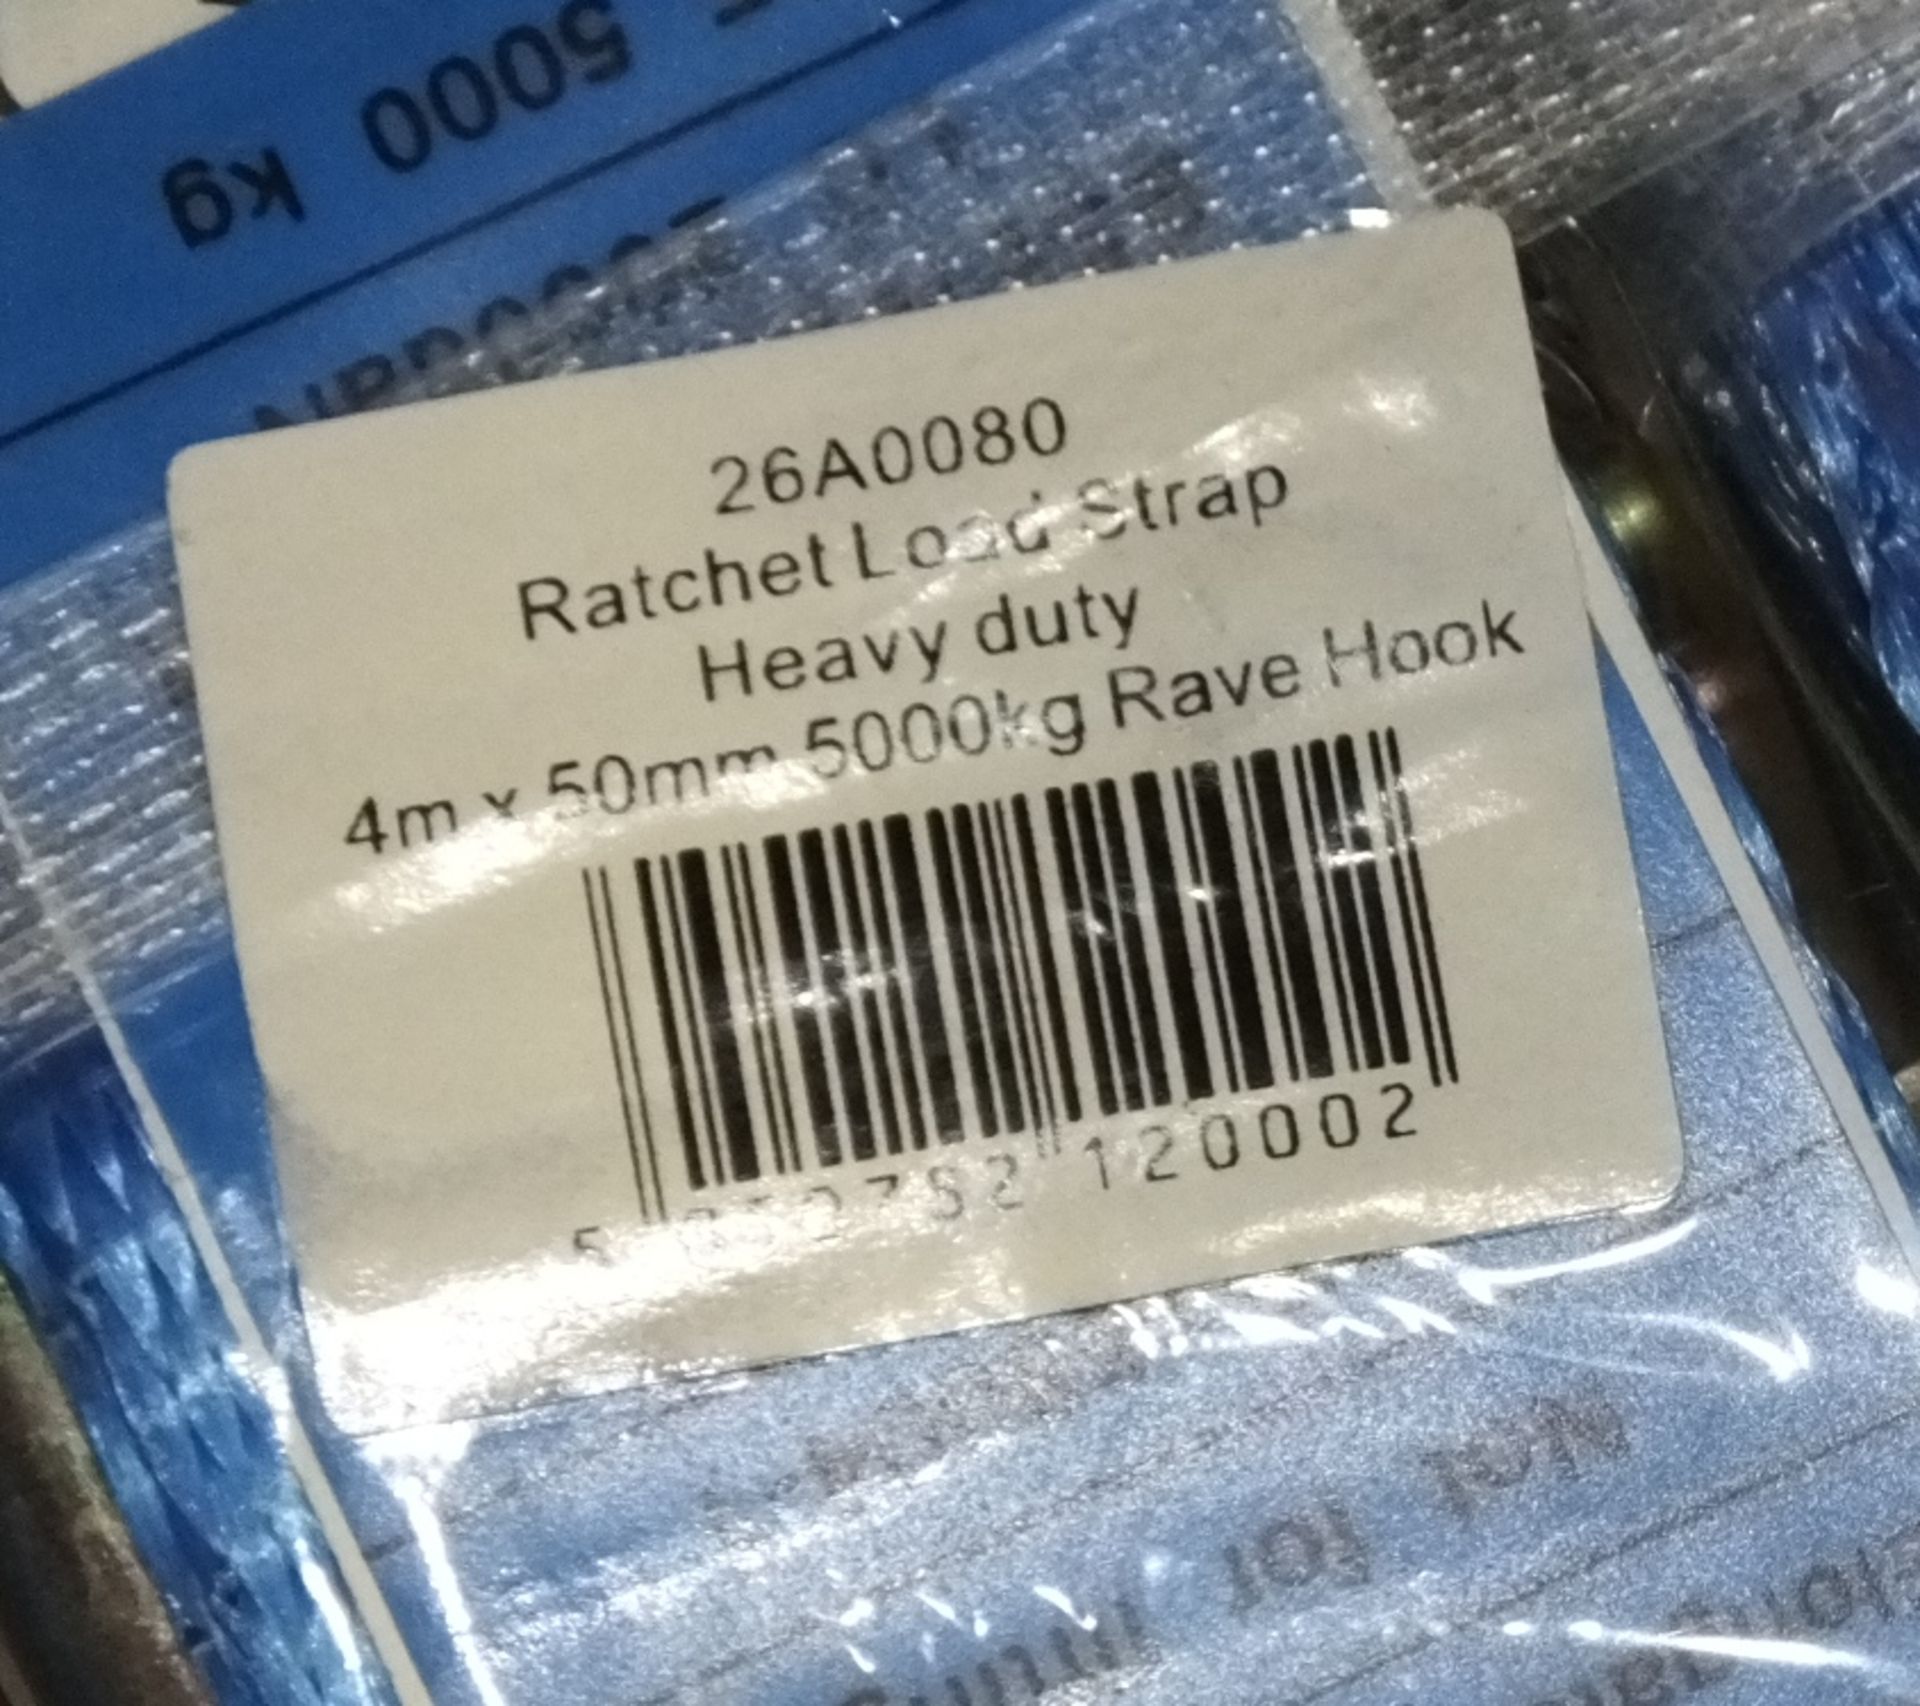 5x Rachet & Straps - 4M x 50mm x 5000kg - blue - Image 2 of 2